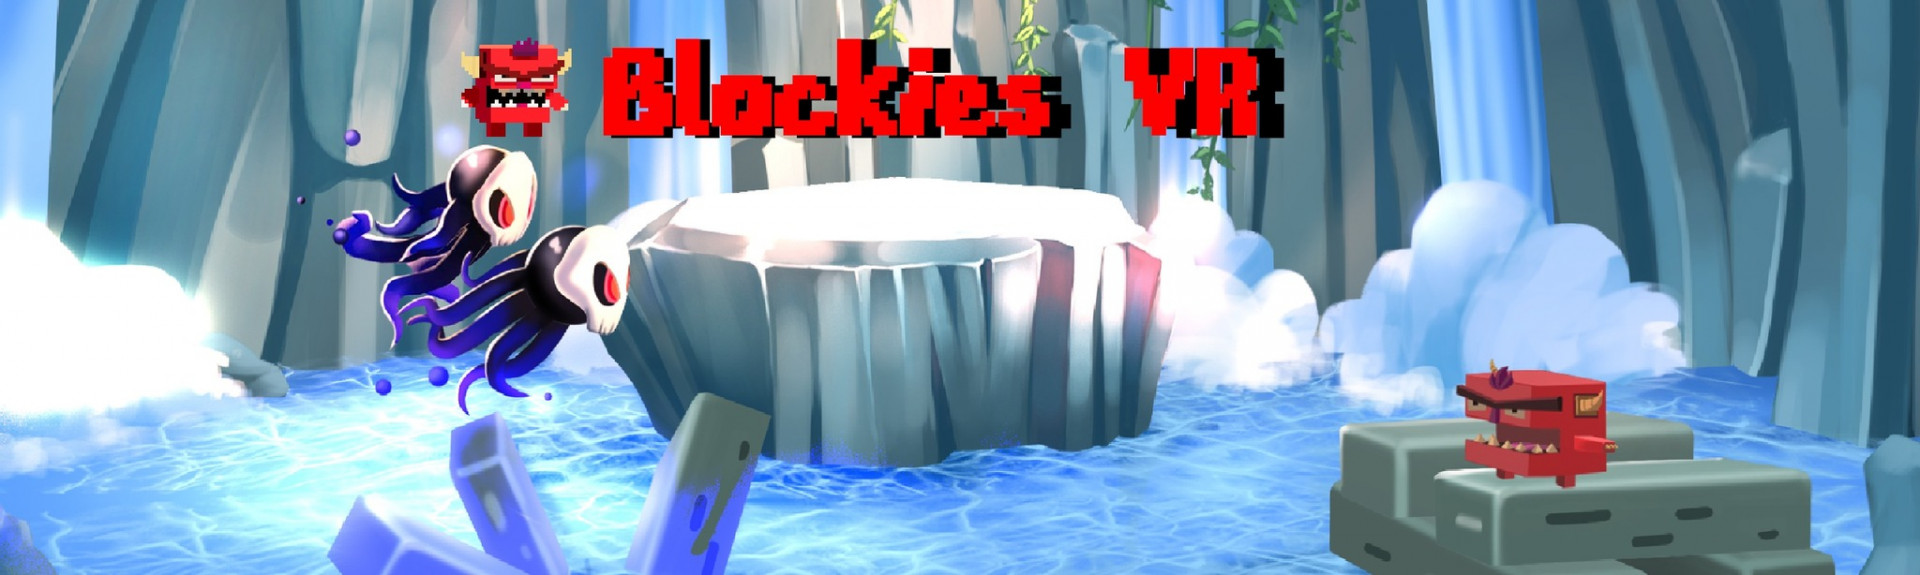 Blockies VR